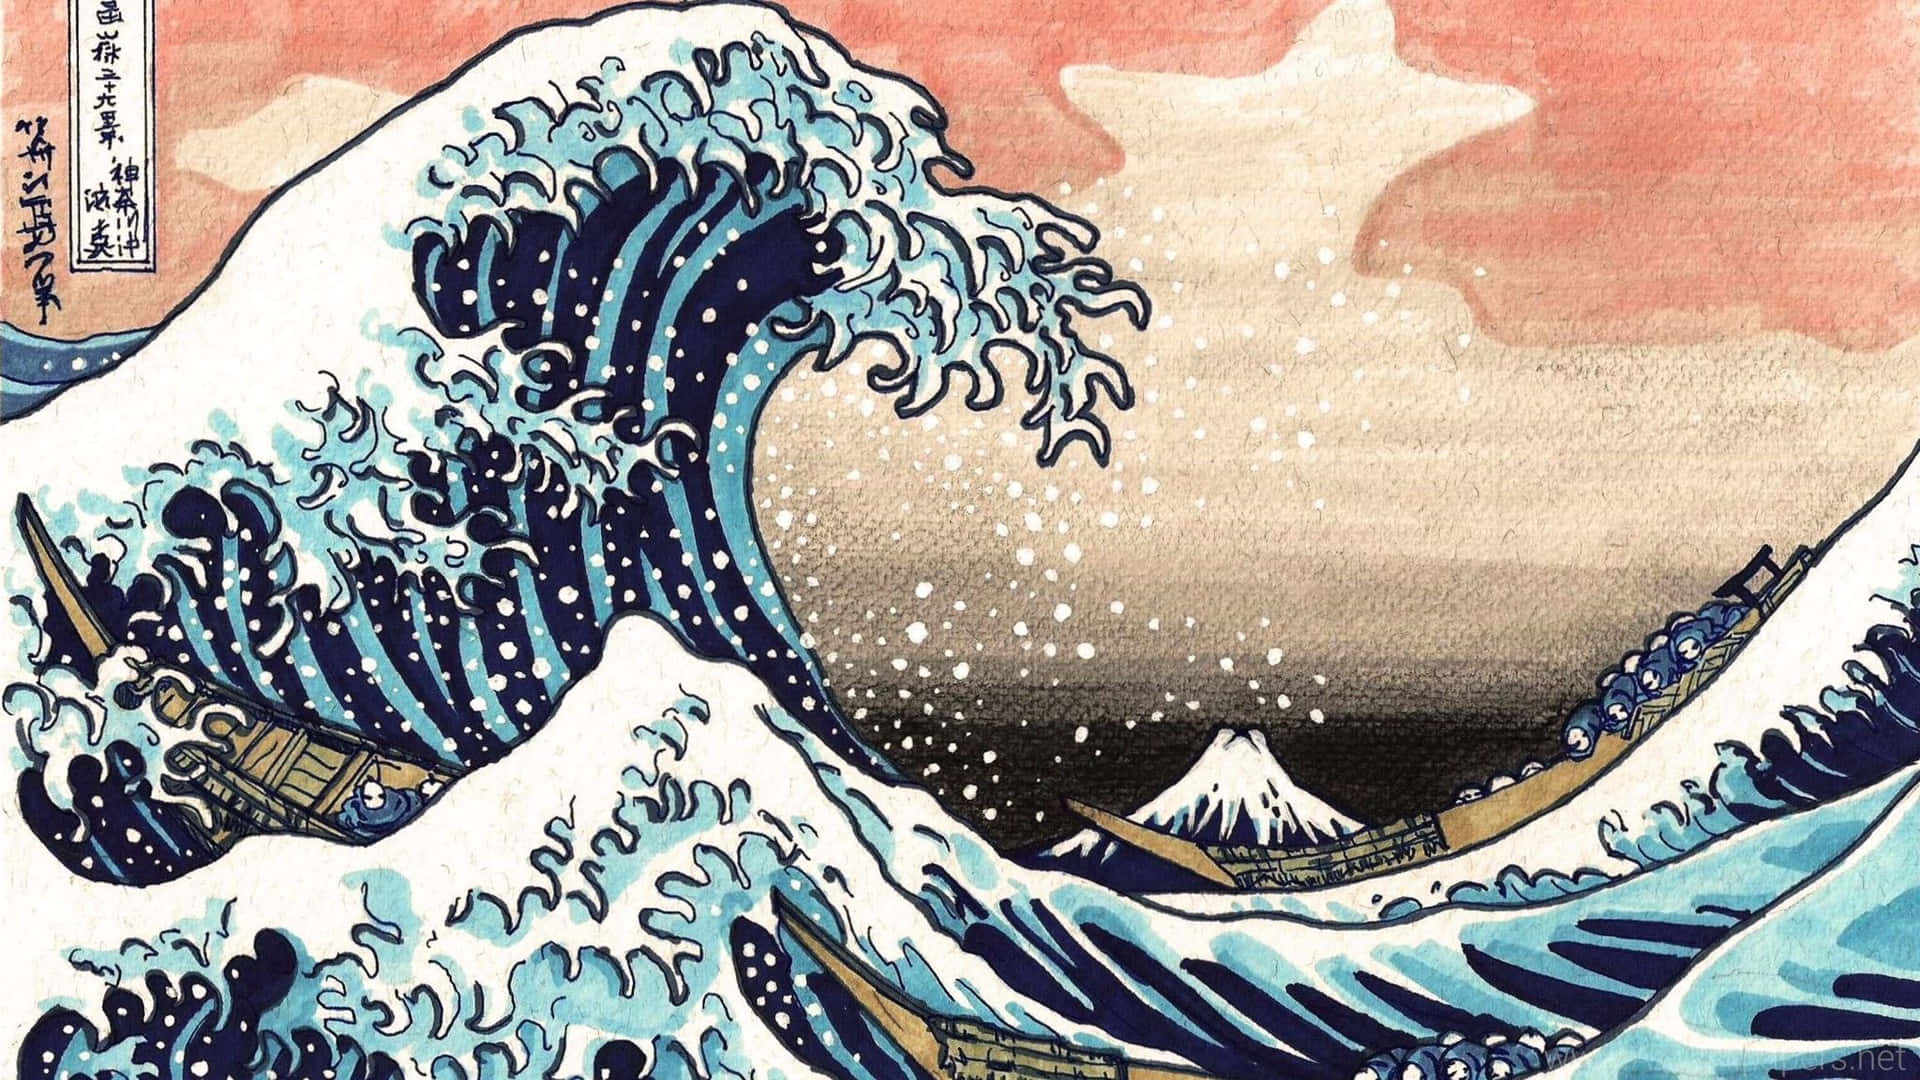 Download The Great Wave of Kanagawa iconic woodblock print by Katsushika Hokusai Wallpaper